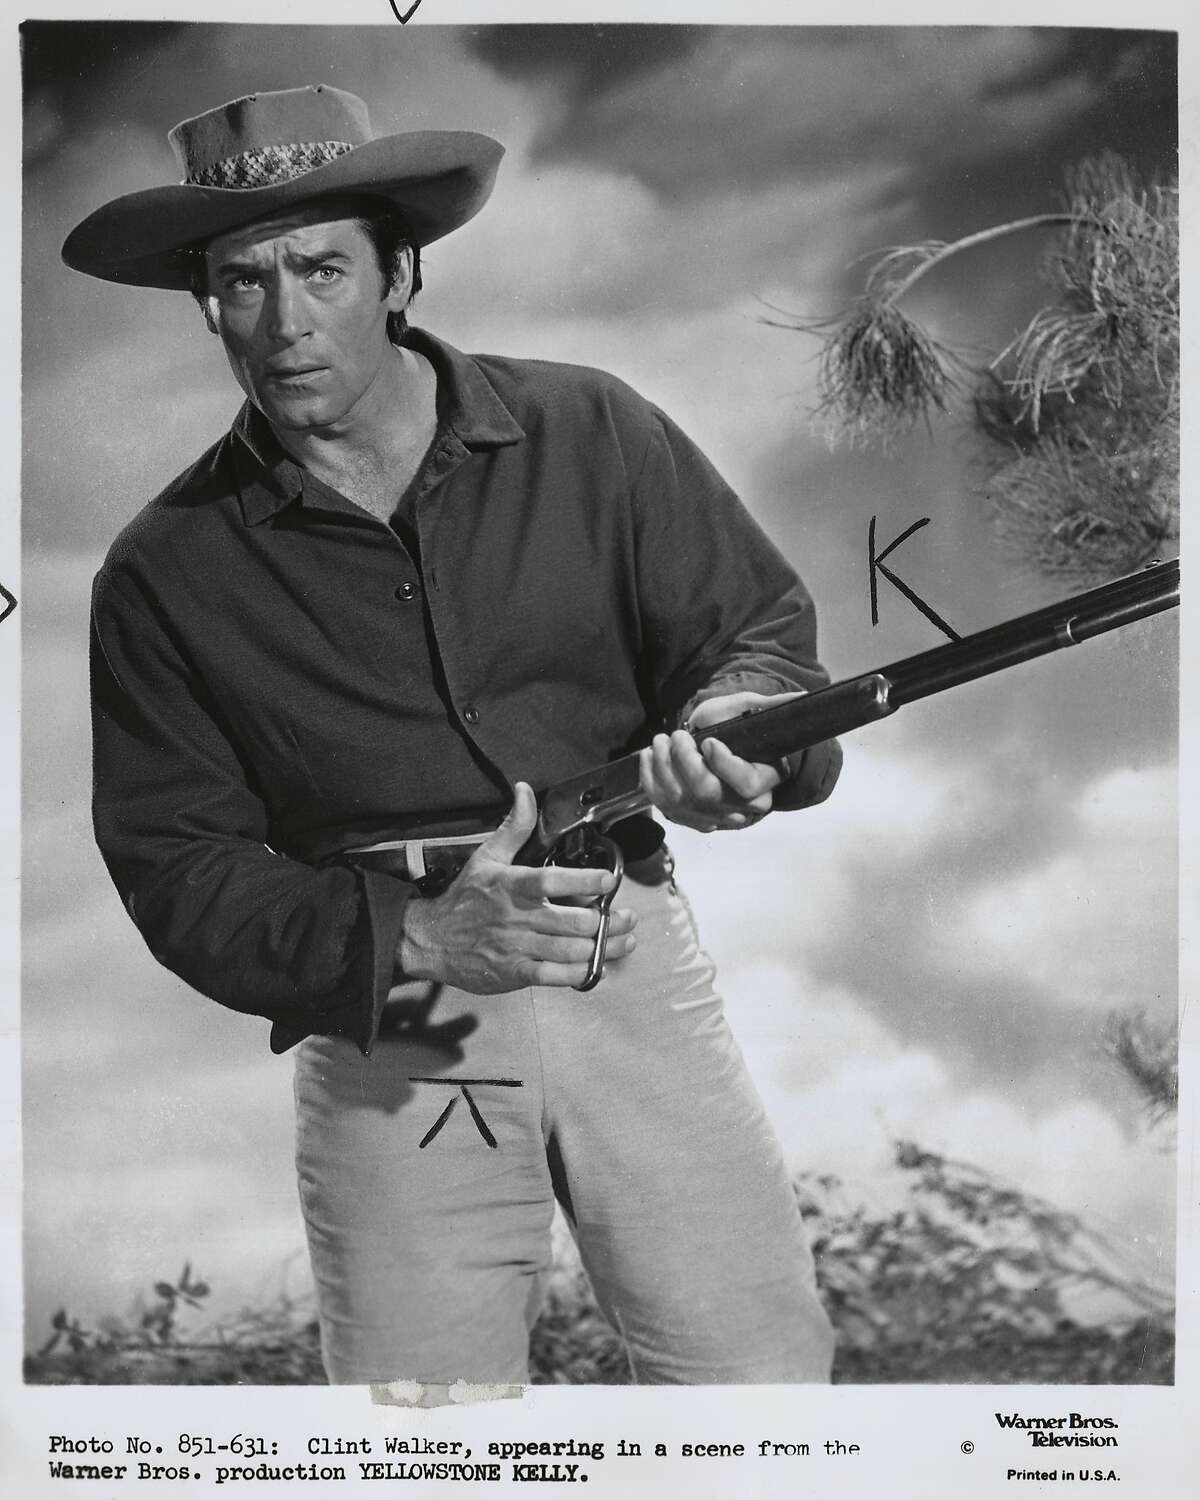 Clint Walker in "Yellowstone Kelly."Clint Walker in "Cheyenne" TV show.